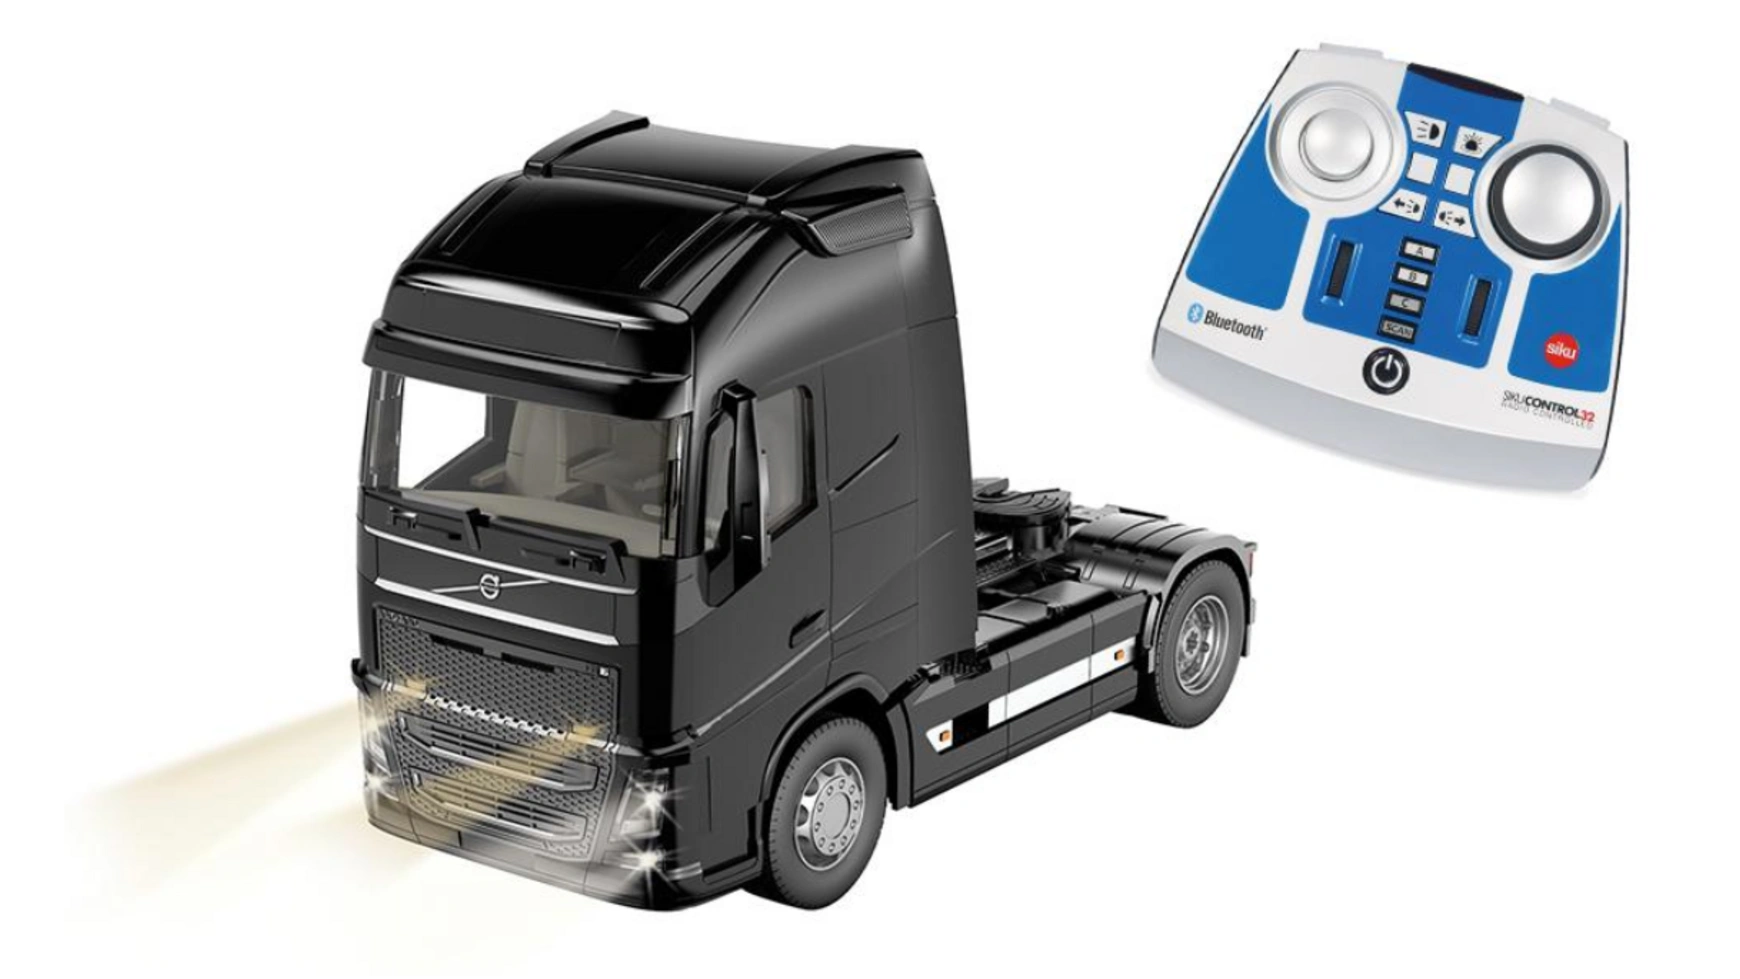 Control volvo fh16 4x2 с управлением через приложение bluetooth и модулем дистанционного управления Siku модель грузовик volvo fh16 performance